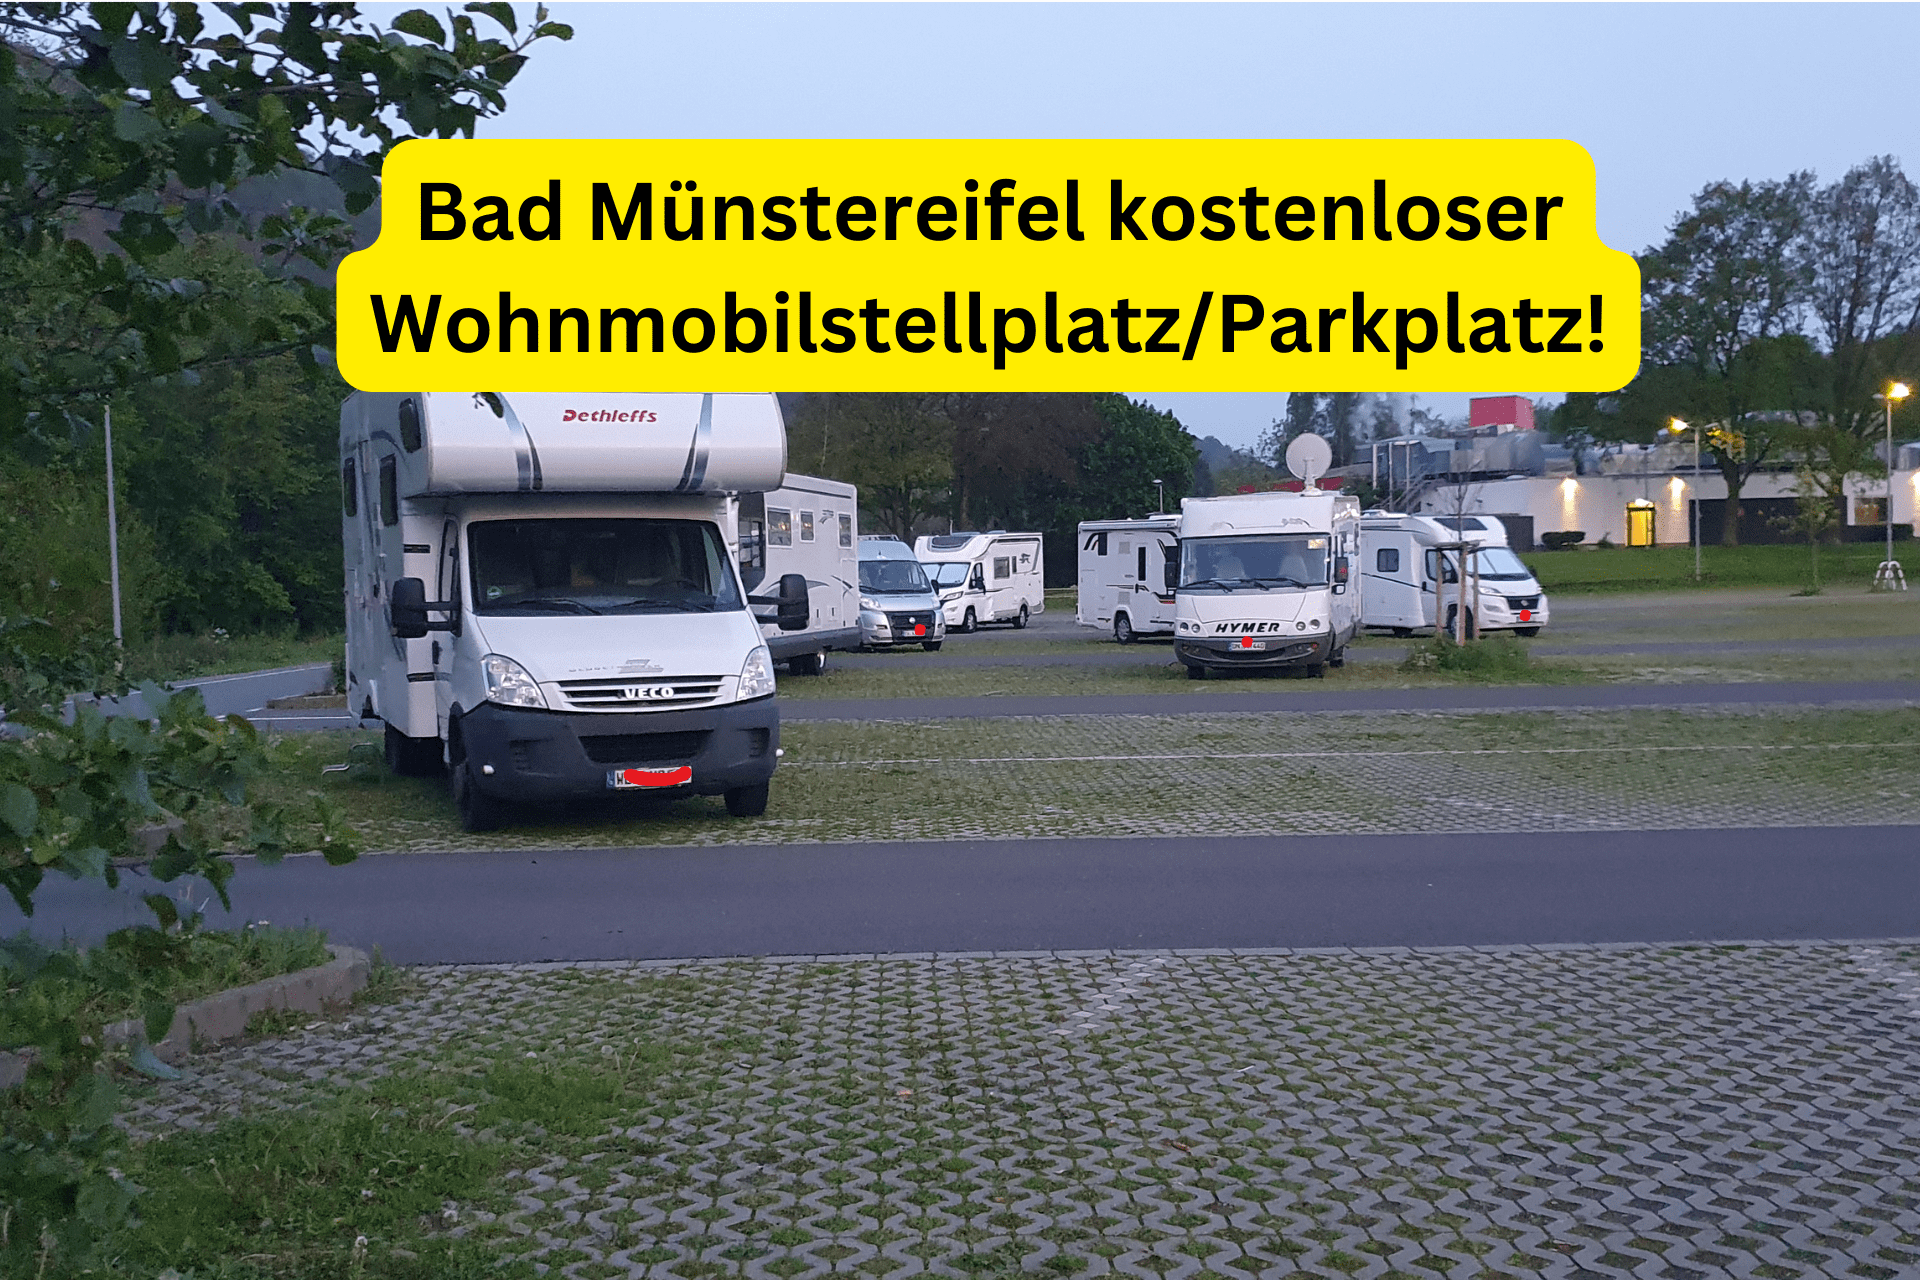 Bad Münstereifel kostenloser Wohnmobilstellplatz Parkplatz!